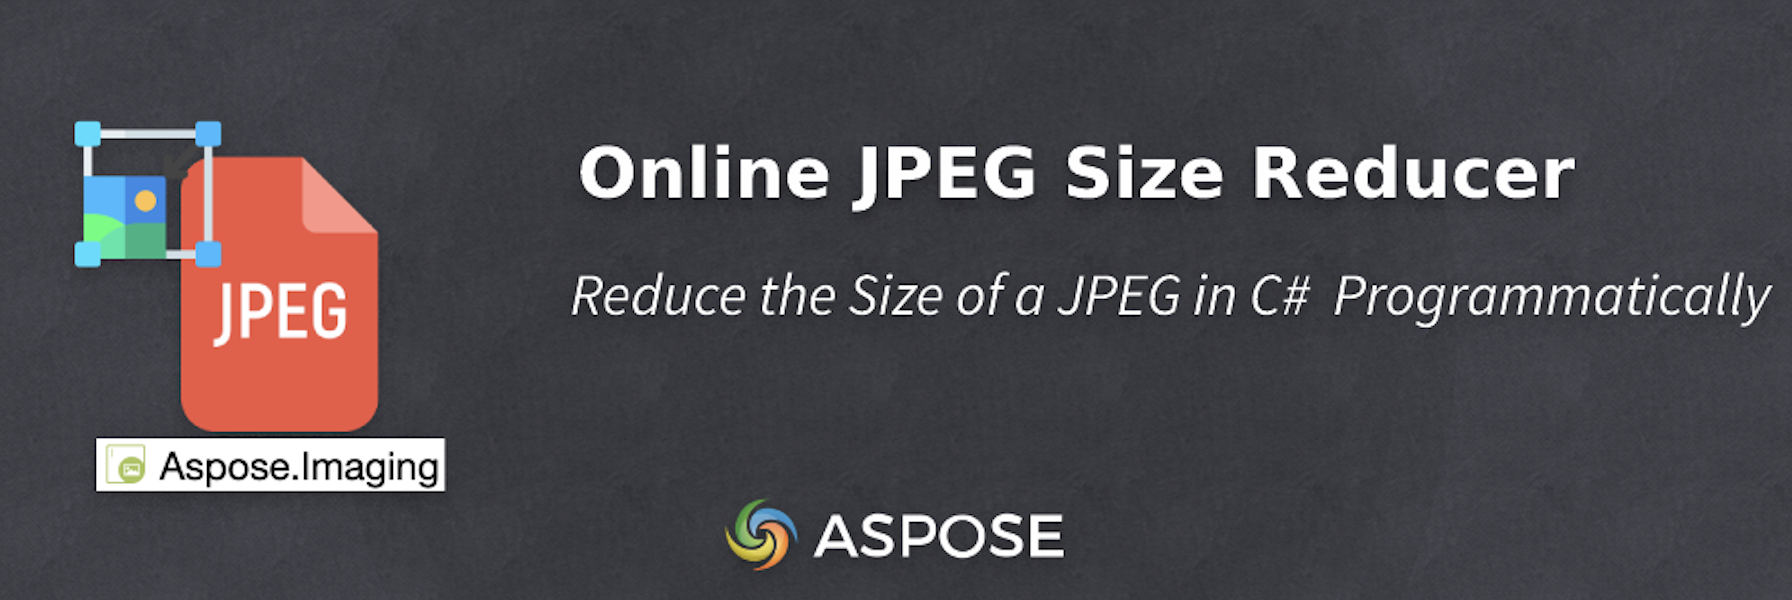 Réduire la taille d'un JPEG en C# - Réducteur de taille JPEG en ligne